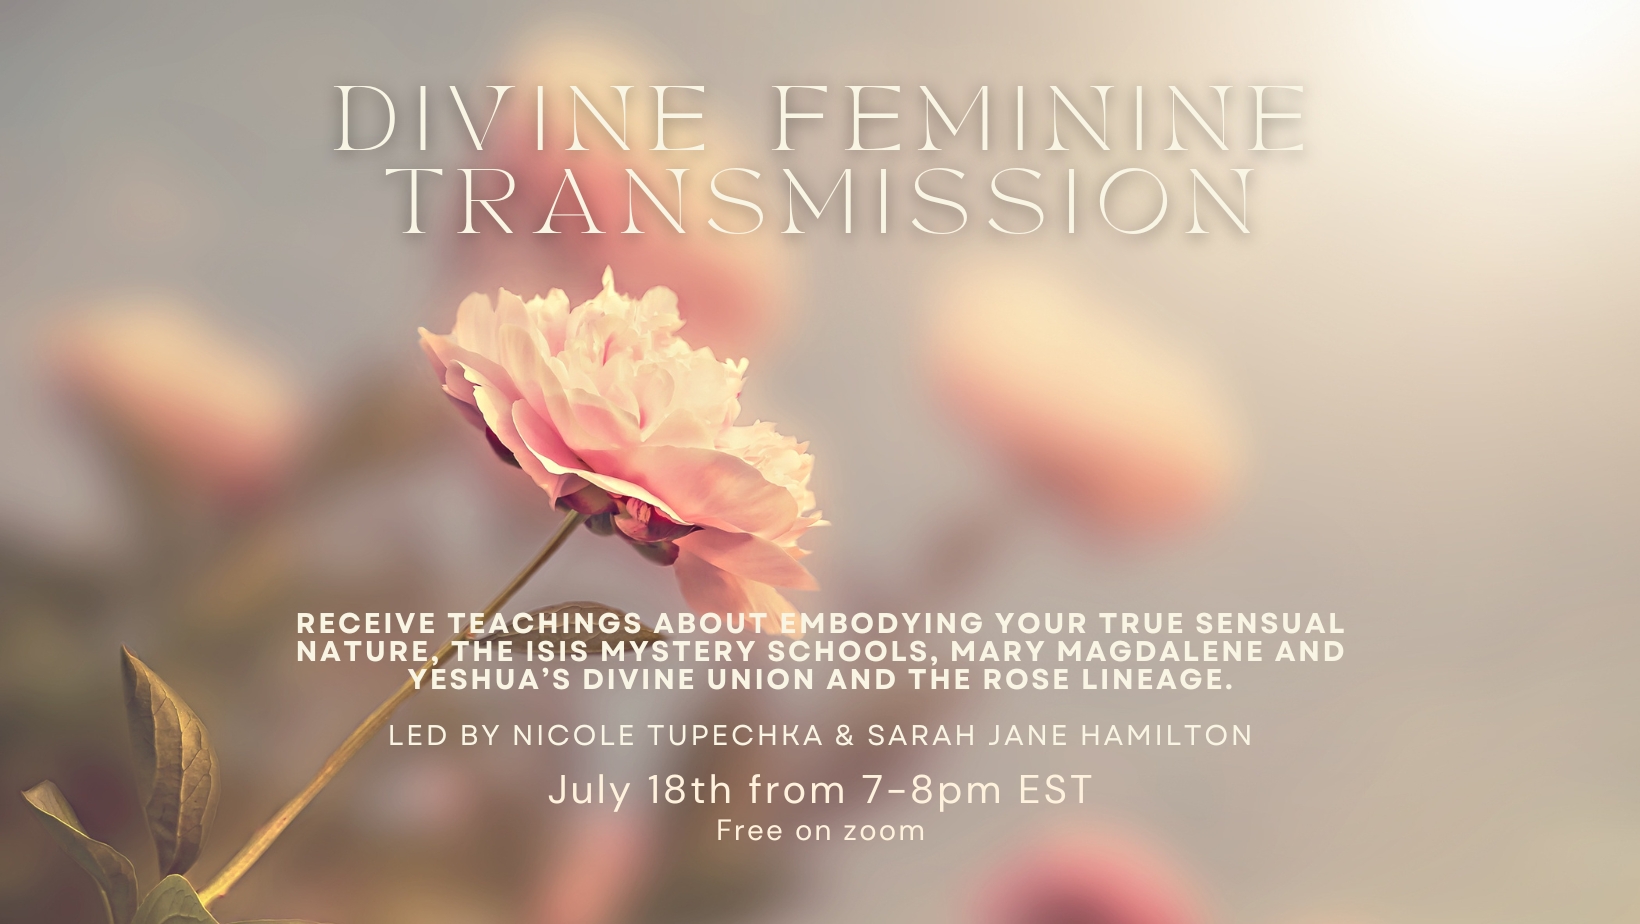 Divine feminine energy transmission